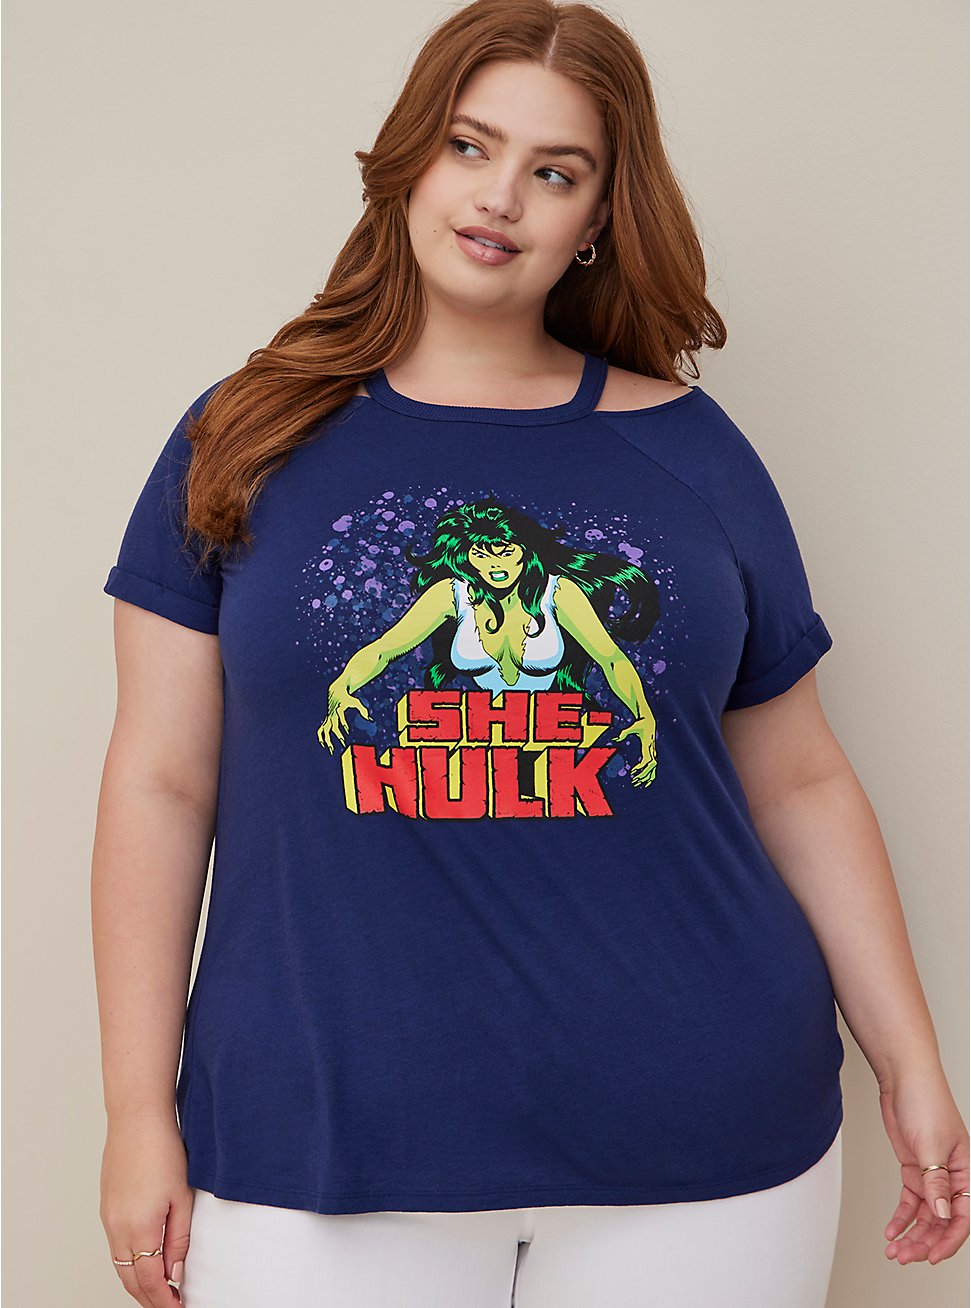 Plus Size Marvel She Hulk Cold Shoulder Goddess Top - Triblend Jersey Blue, MEDEVIAL BLUE, hi-res